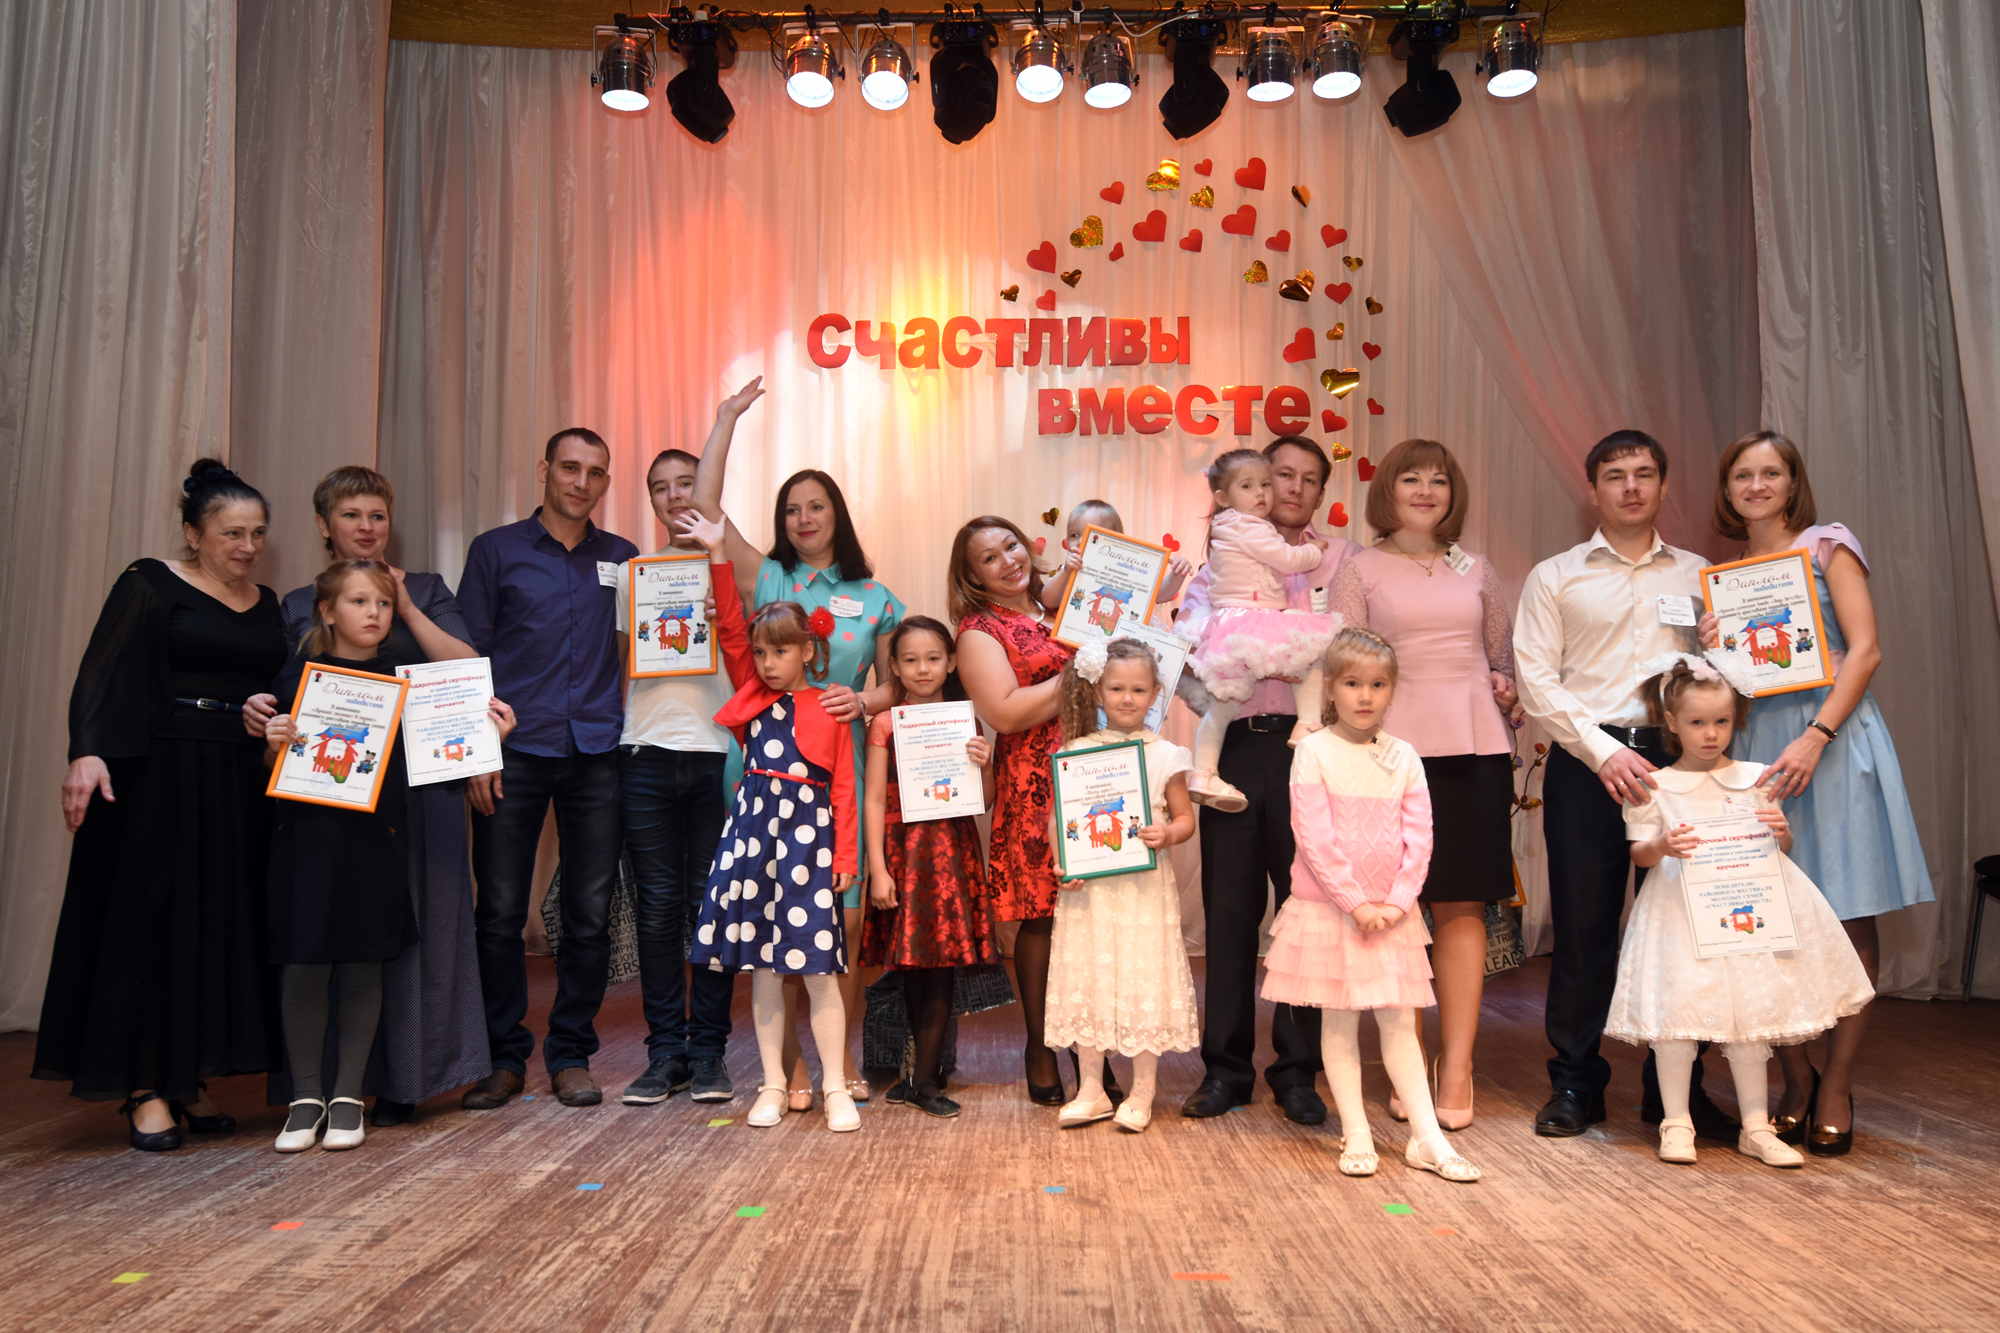 Районный фестиваль молодых семей Счастливы вместе 31.10.2016.